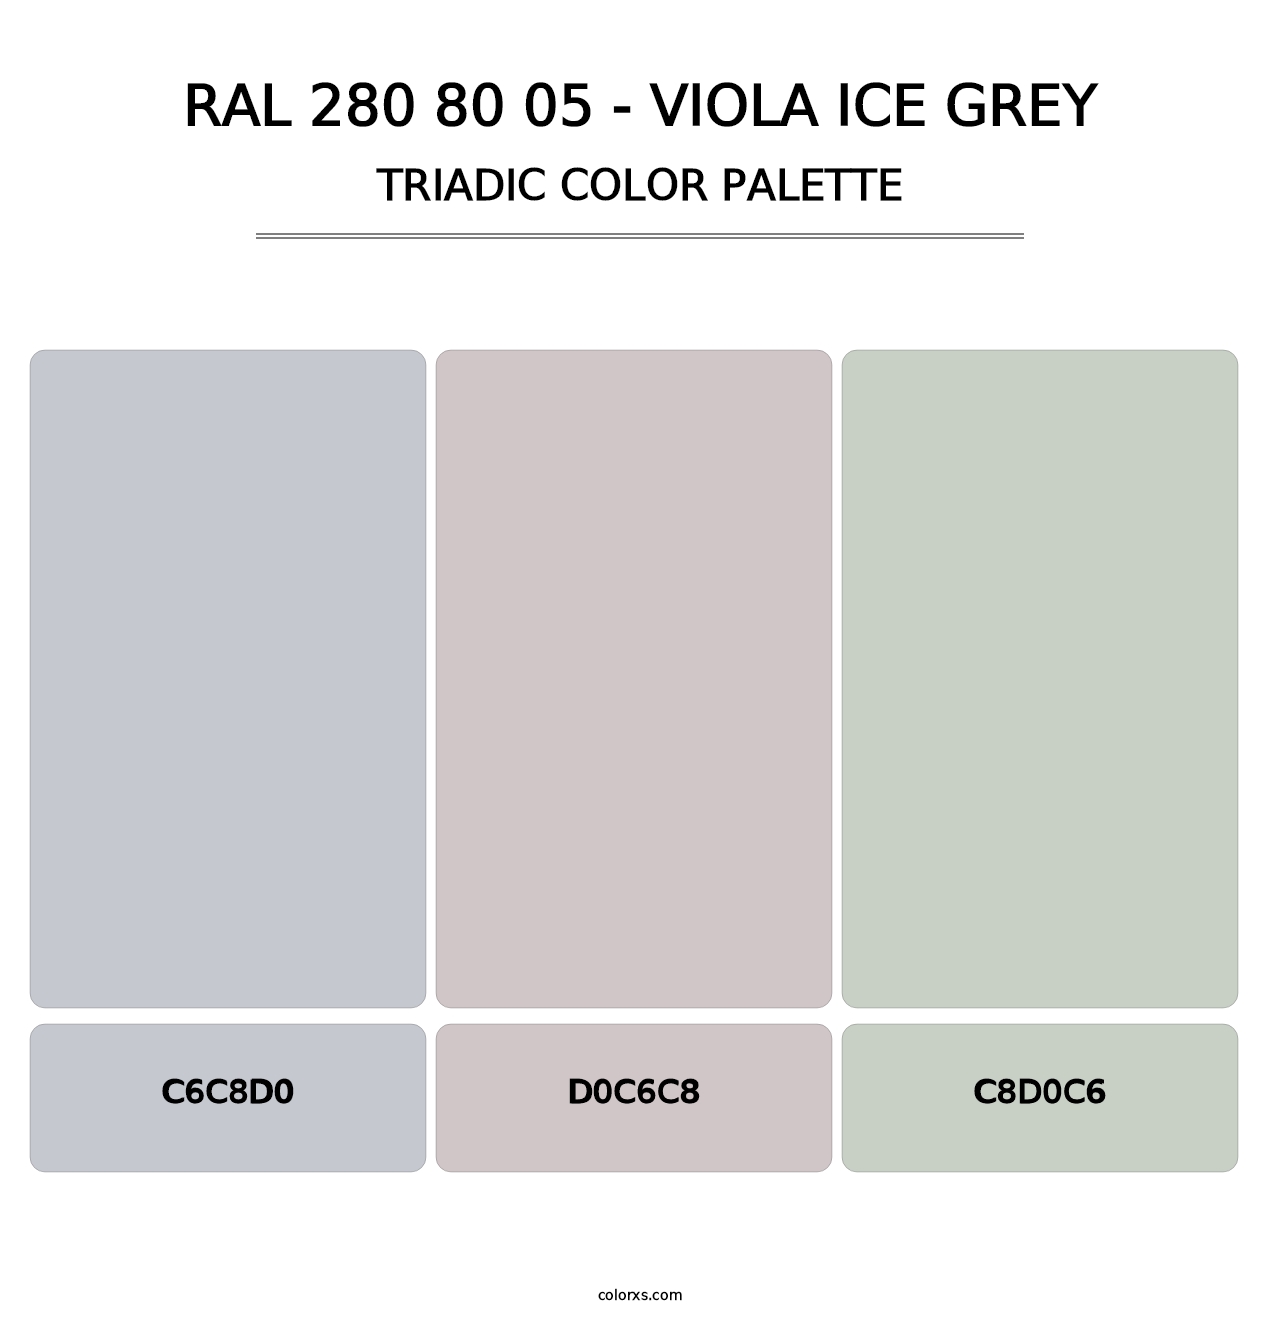 RAL 280 80 05 - Viola Ice Grey - Triadic Color Palette